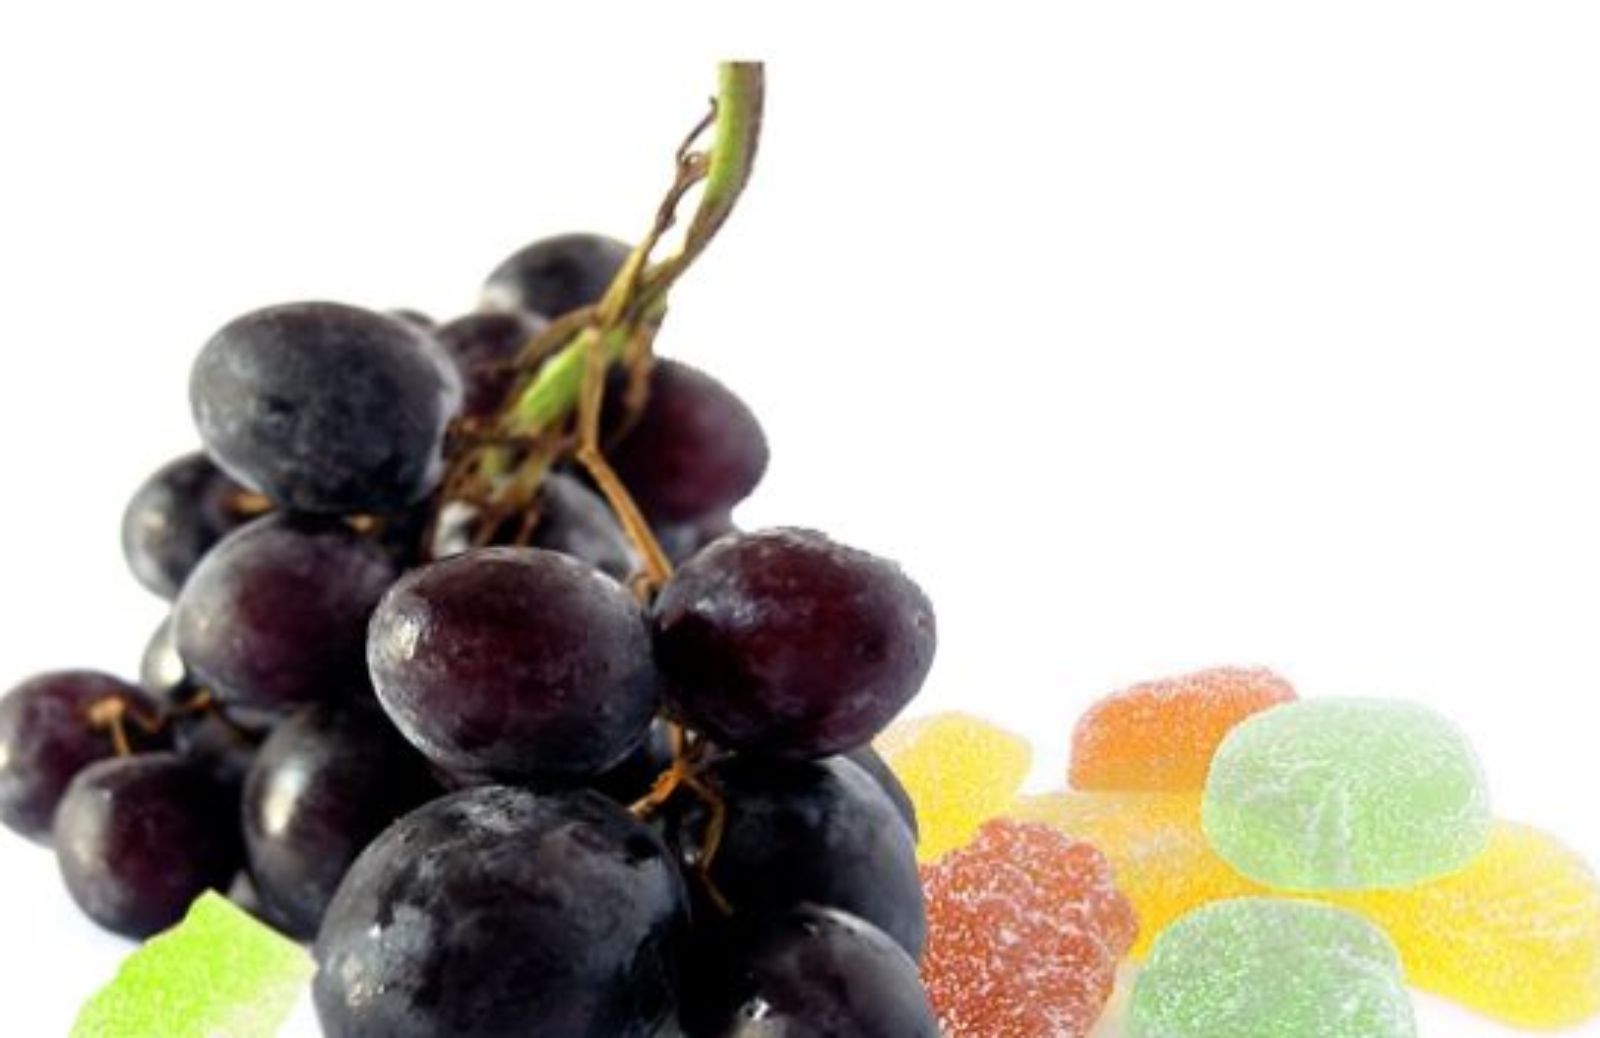 Come giocare con la frutta: collane d'uva e gelatine